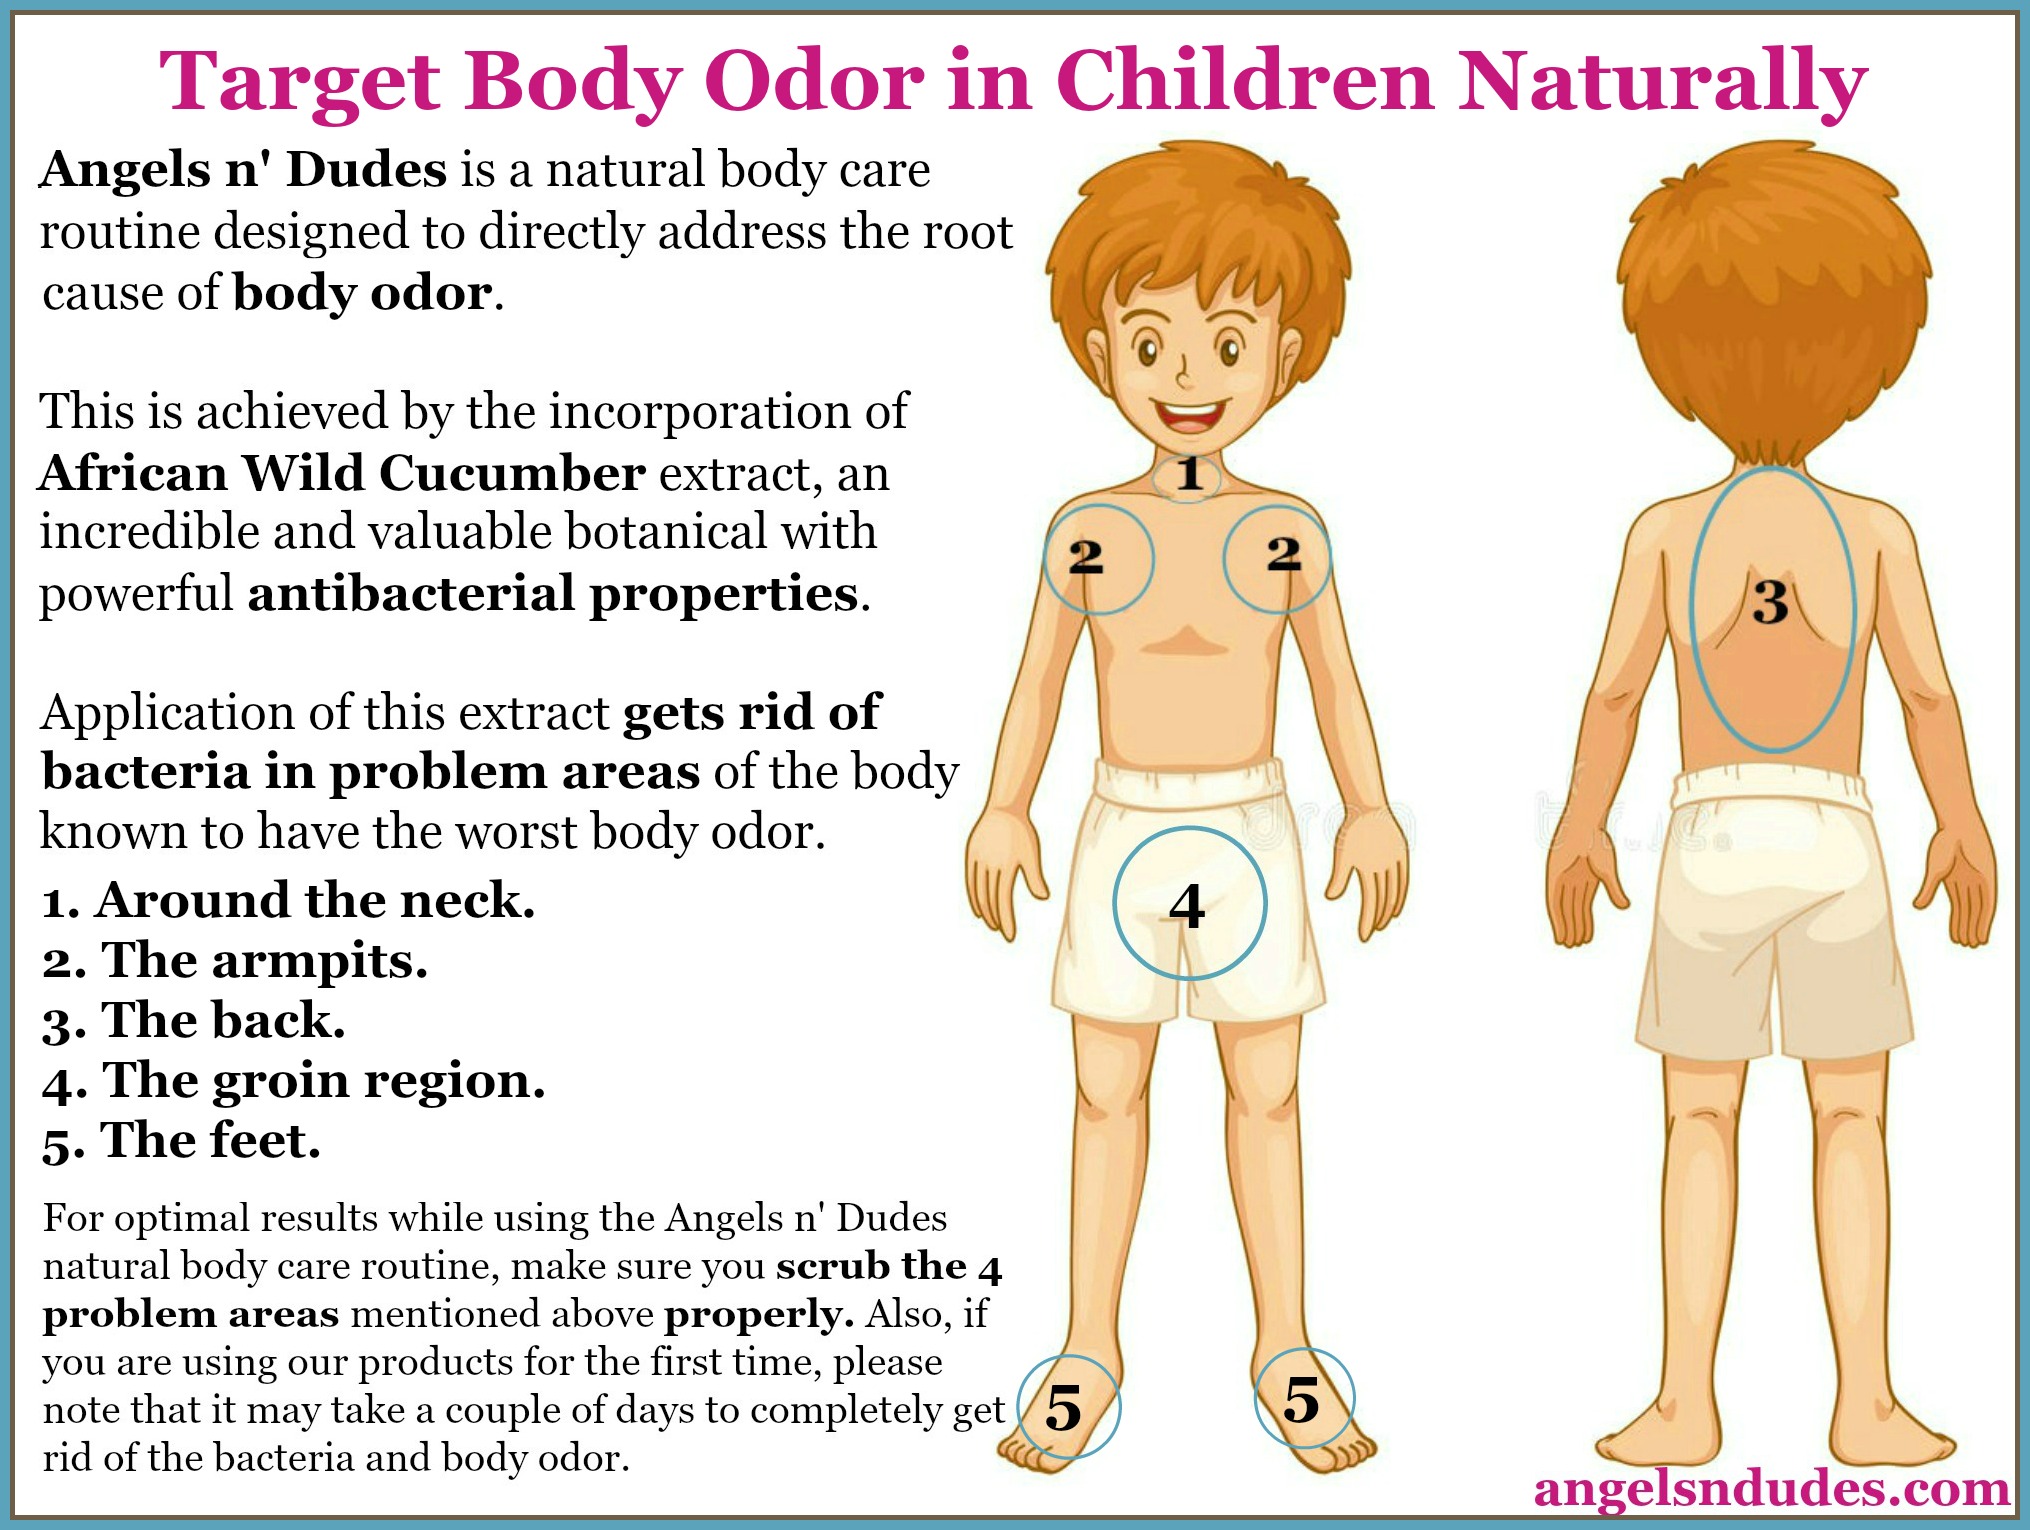 Body Odor in Children